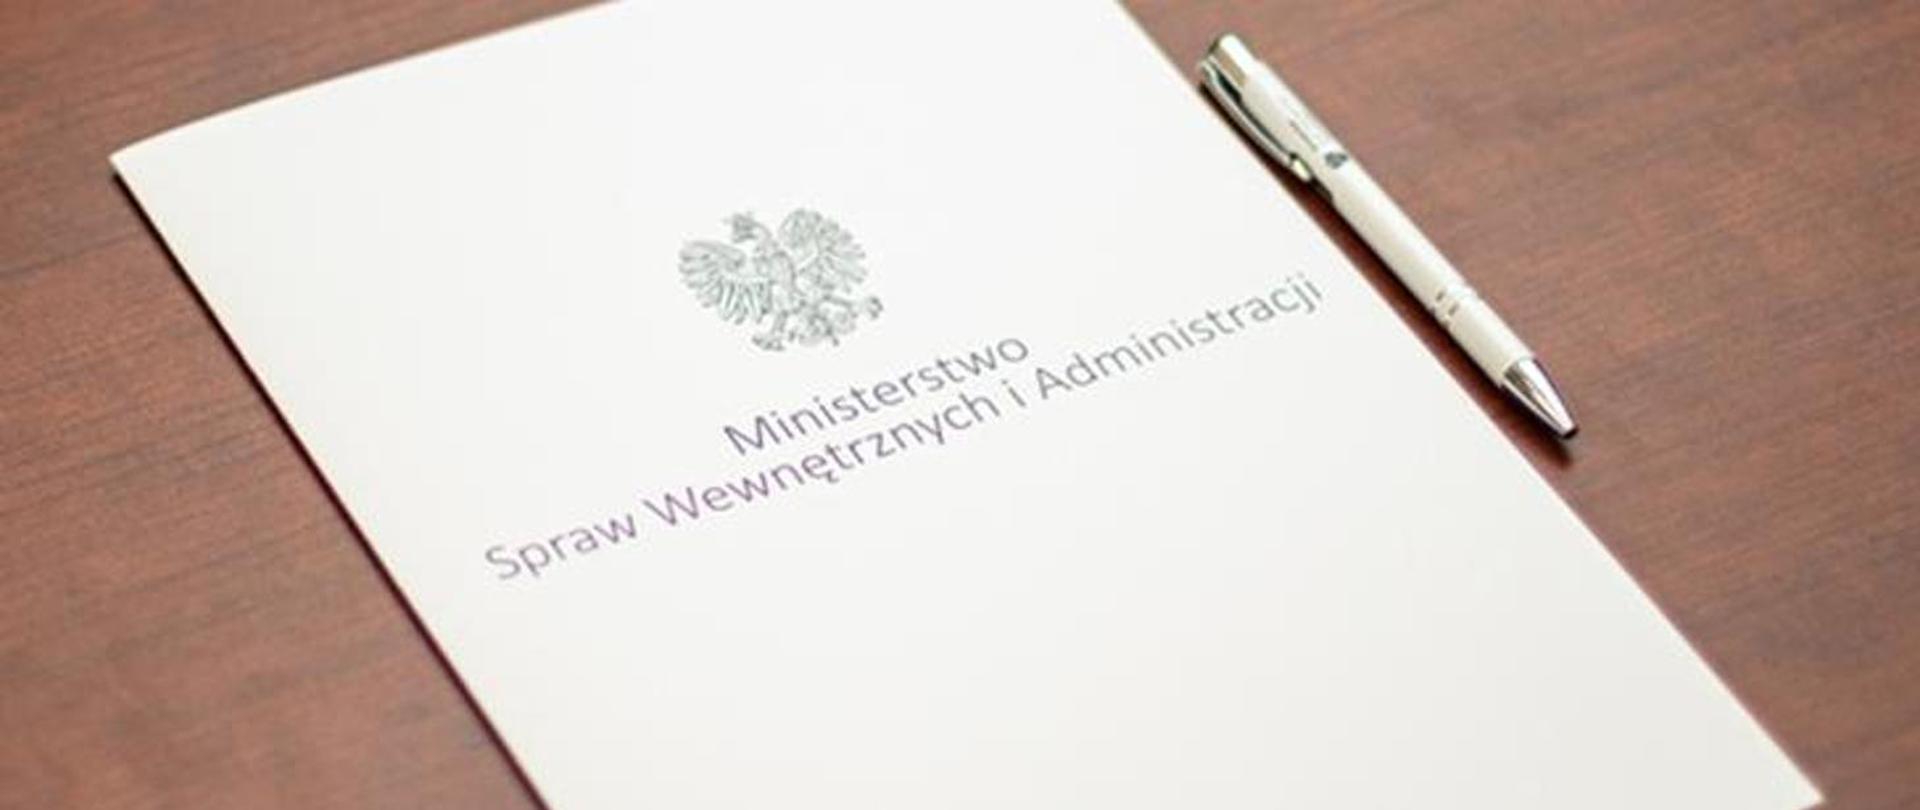 Biała teczka na stole z niebieskim napisem Ministerstwo Spraw Wewnętrznych i Administracji powyżej napisy szare orzeł w koronie, obok leży biało srebrny długopis.